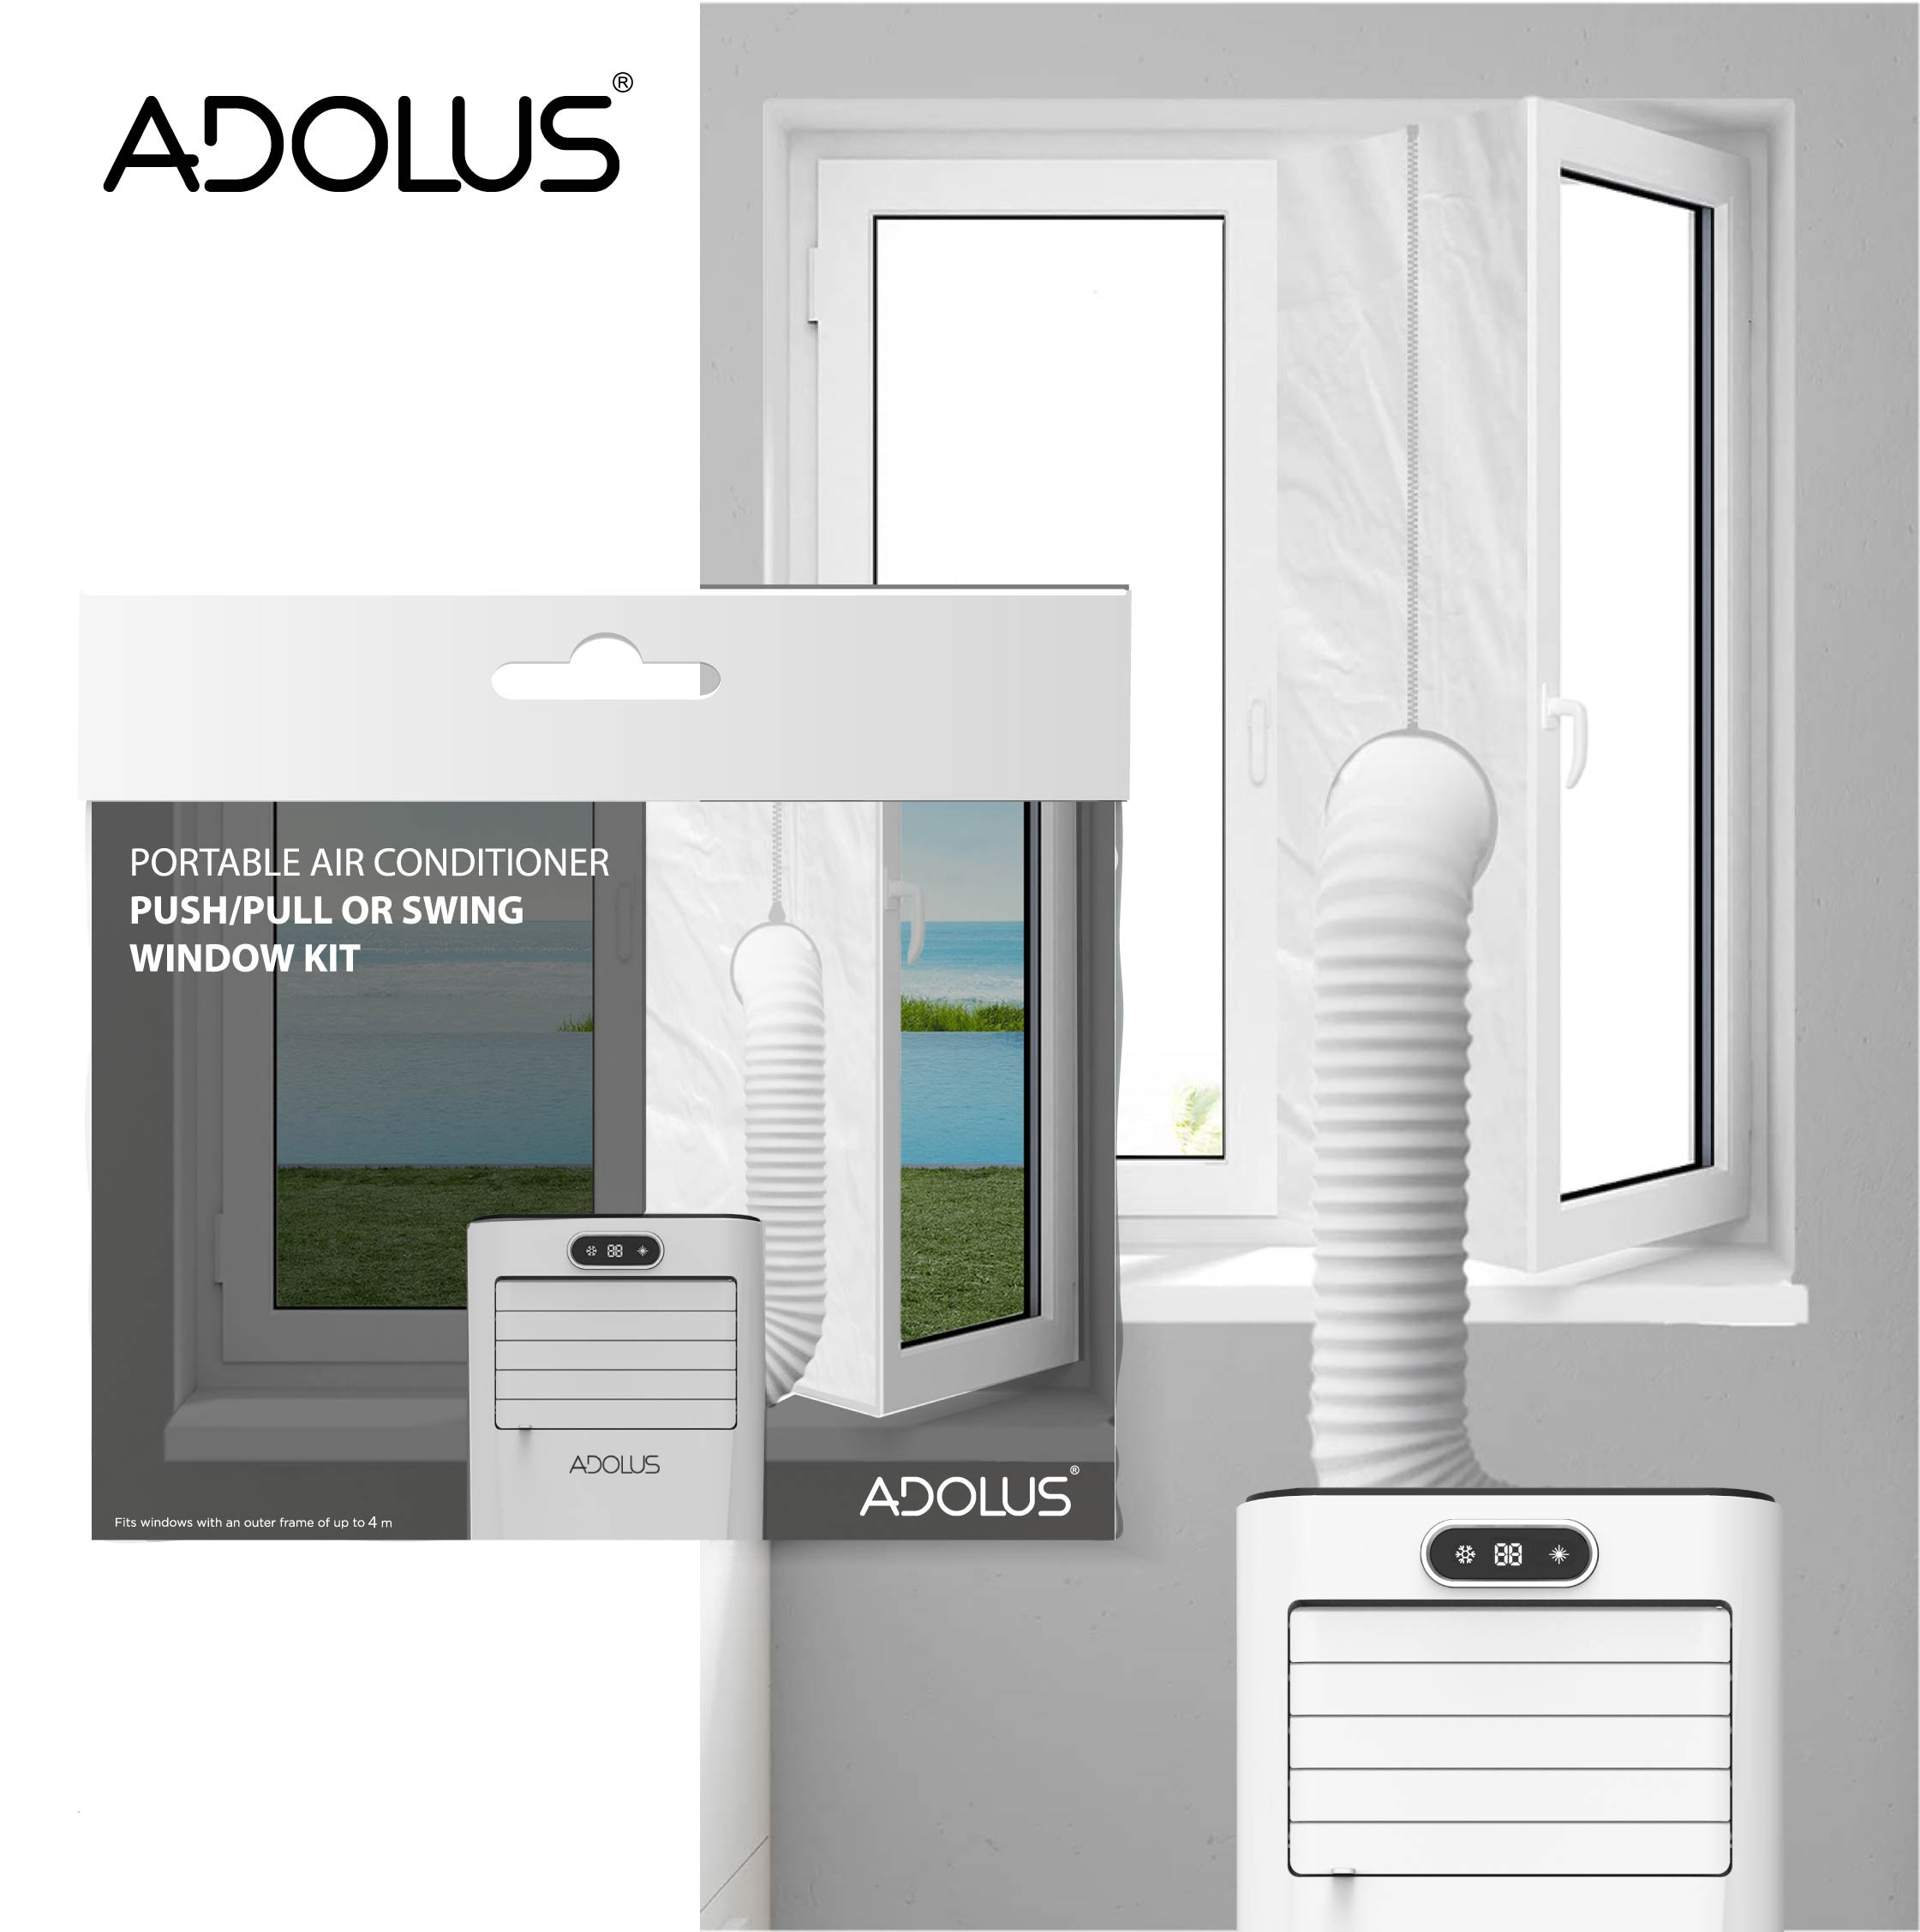 Mobilus oro kondicionierius ADOLUS ARCTIC A2600 su lango tarpine